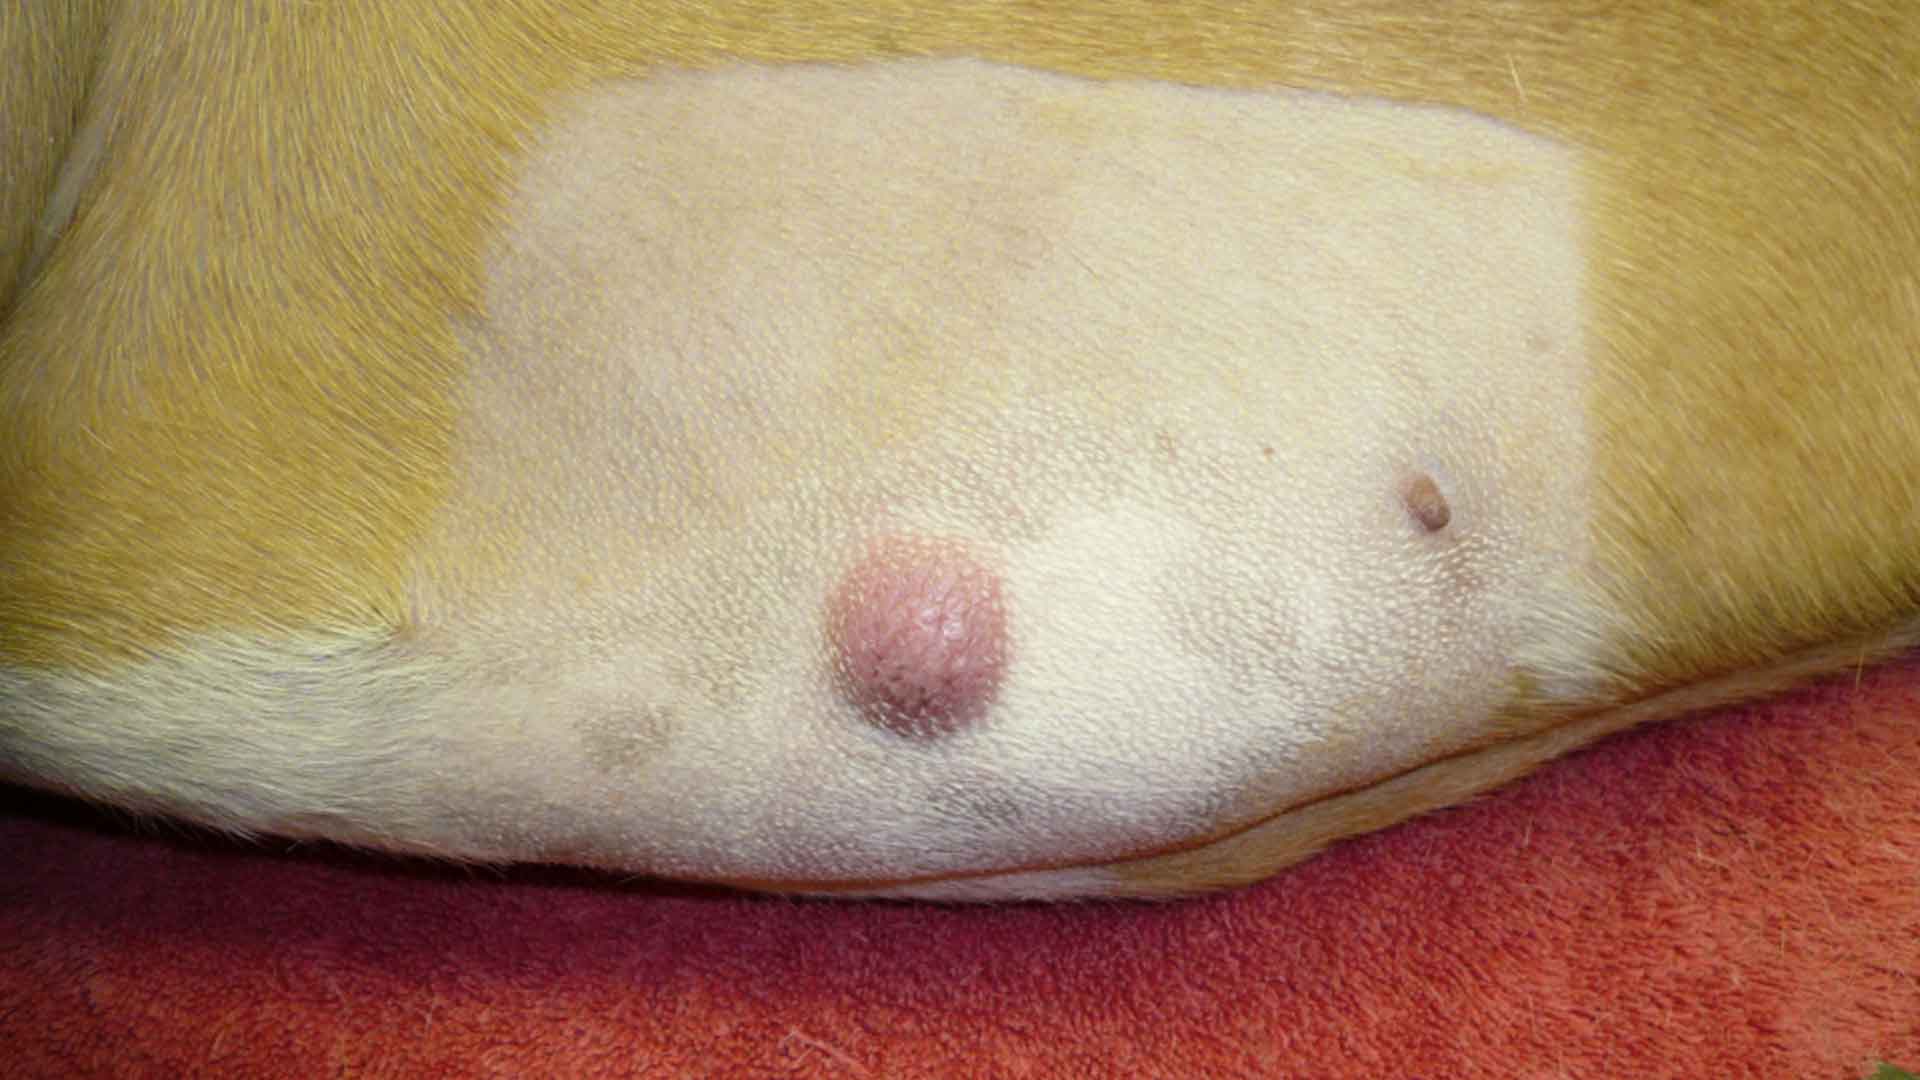 basal cell tumor dog